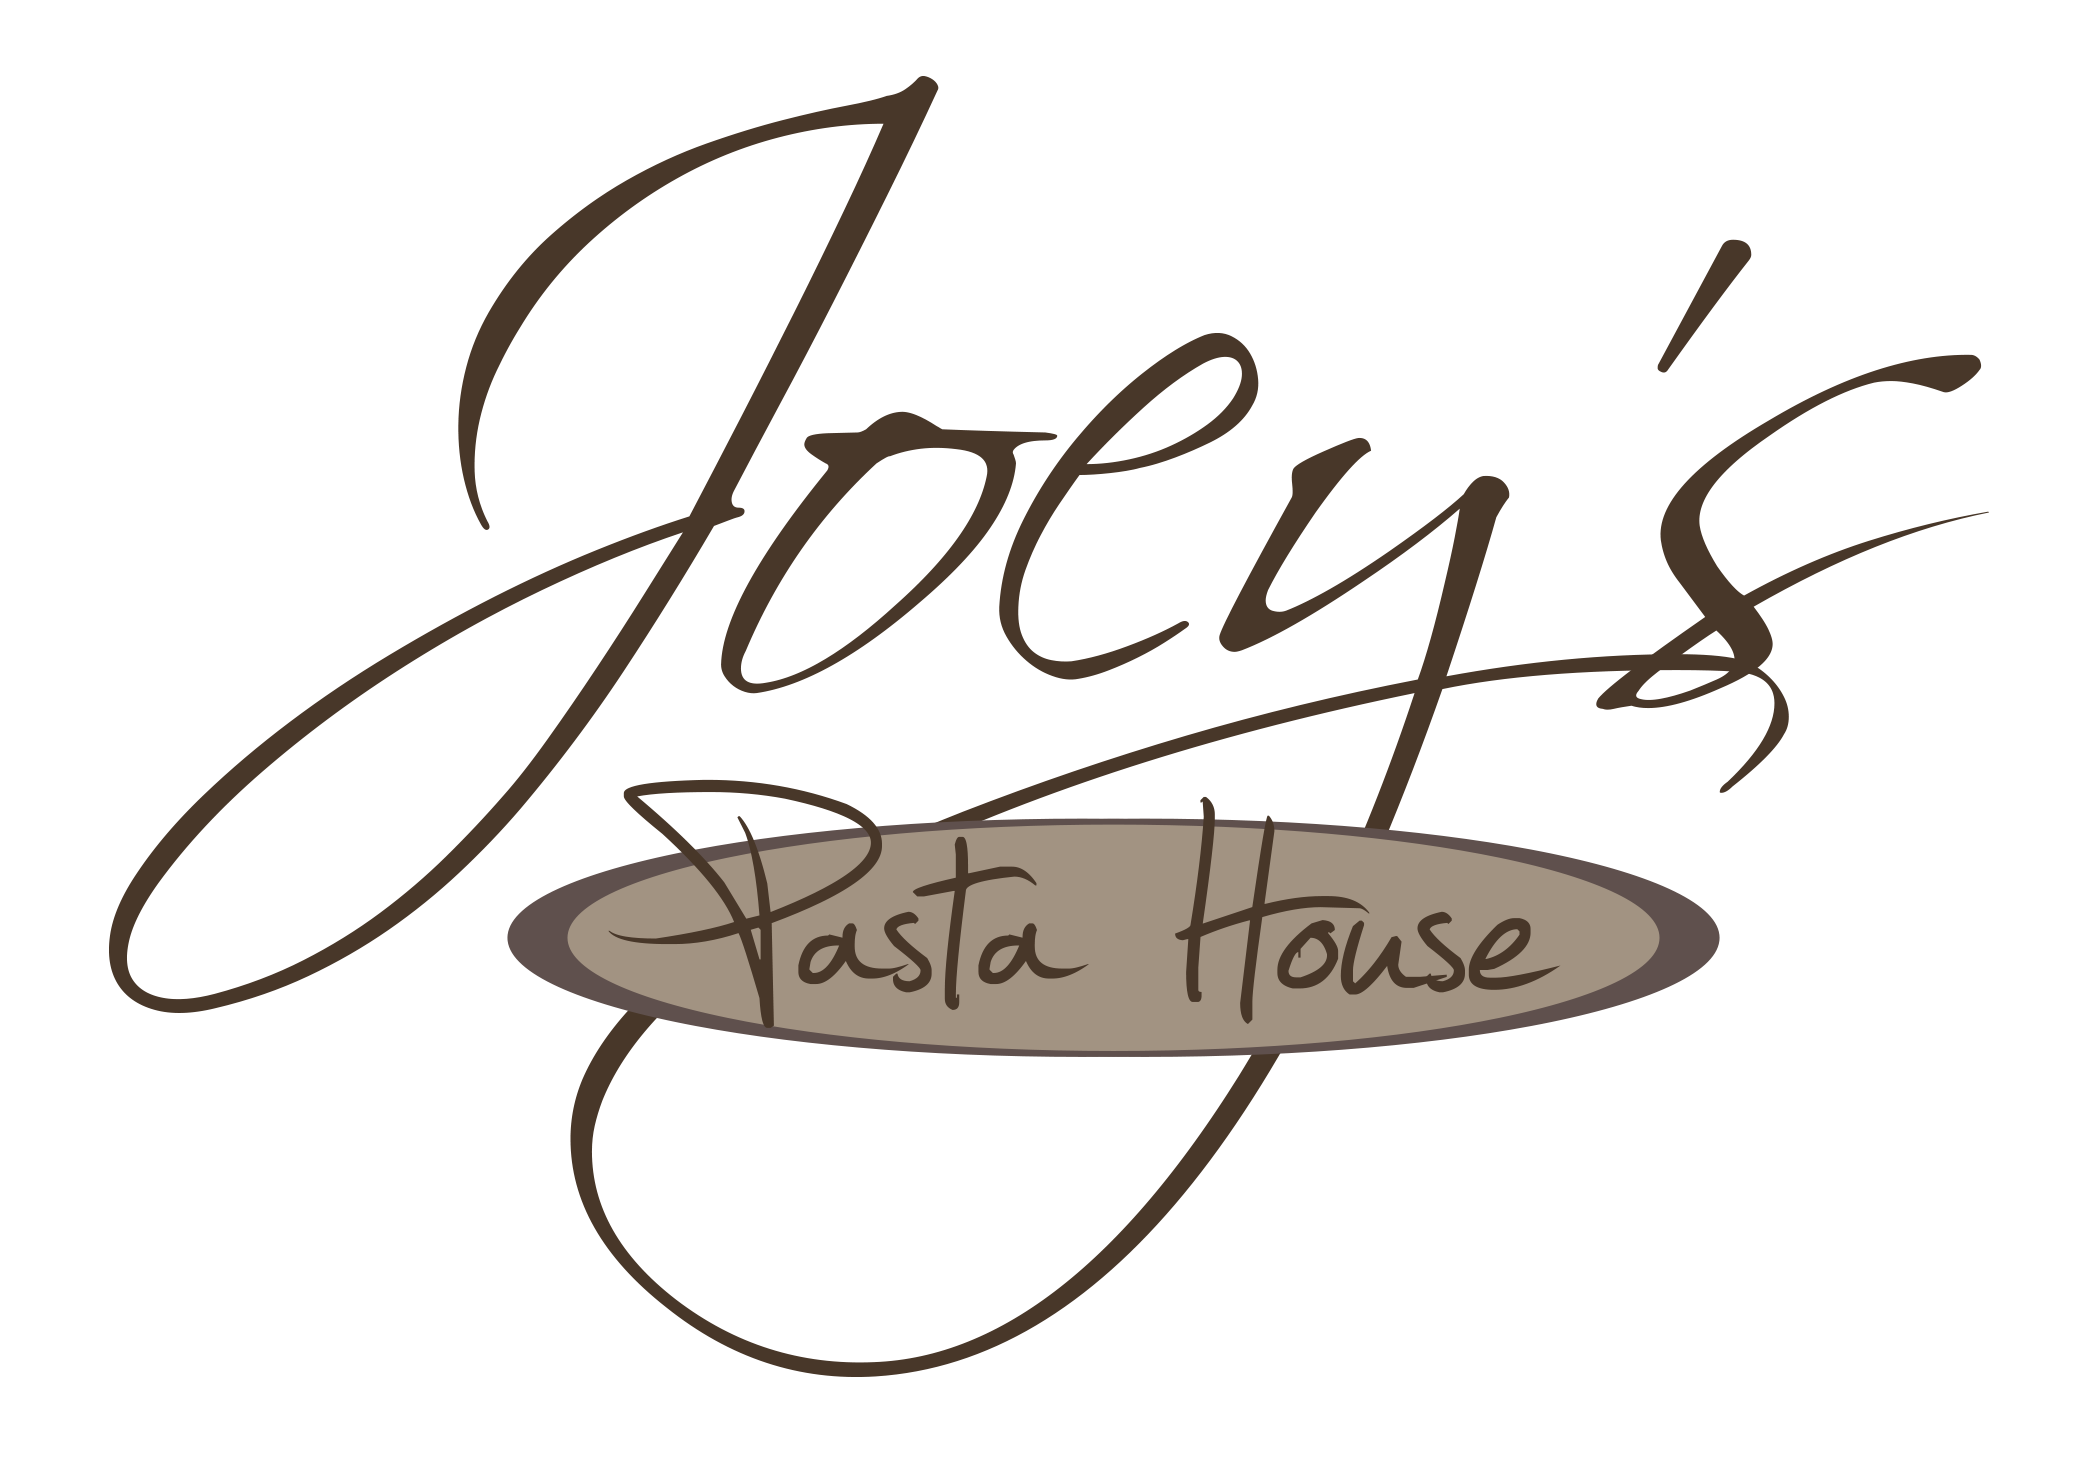 Joey's Pasta House